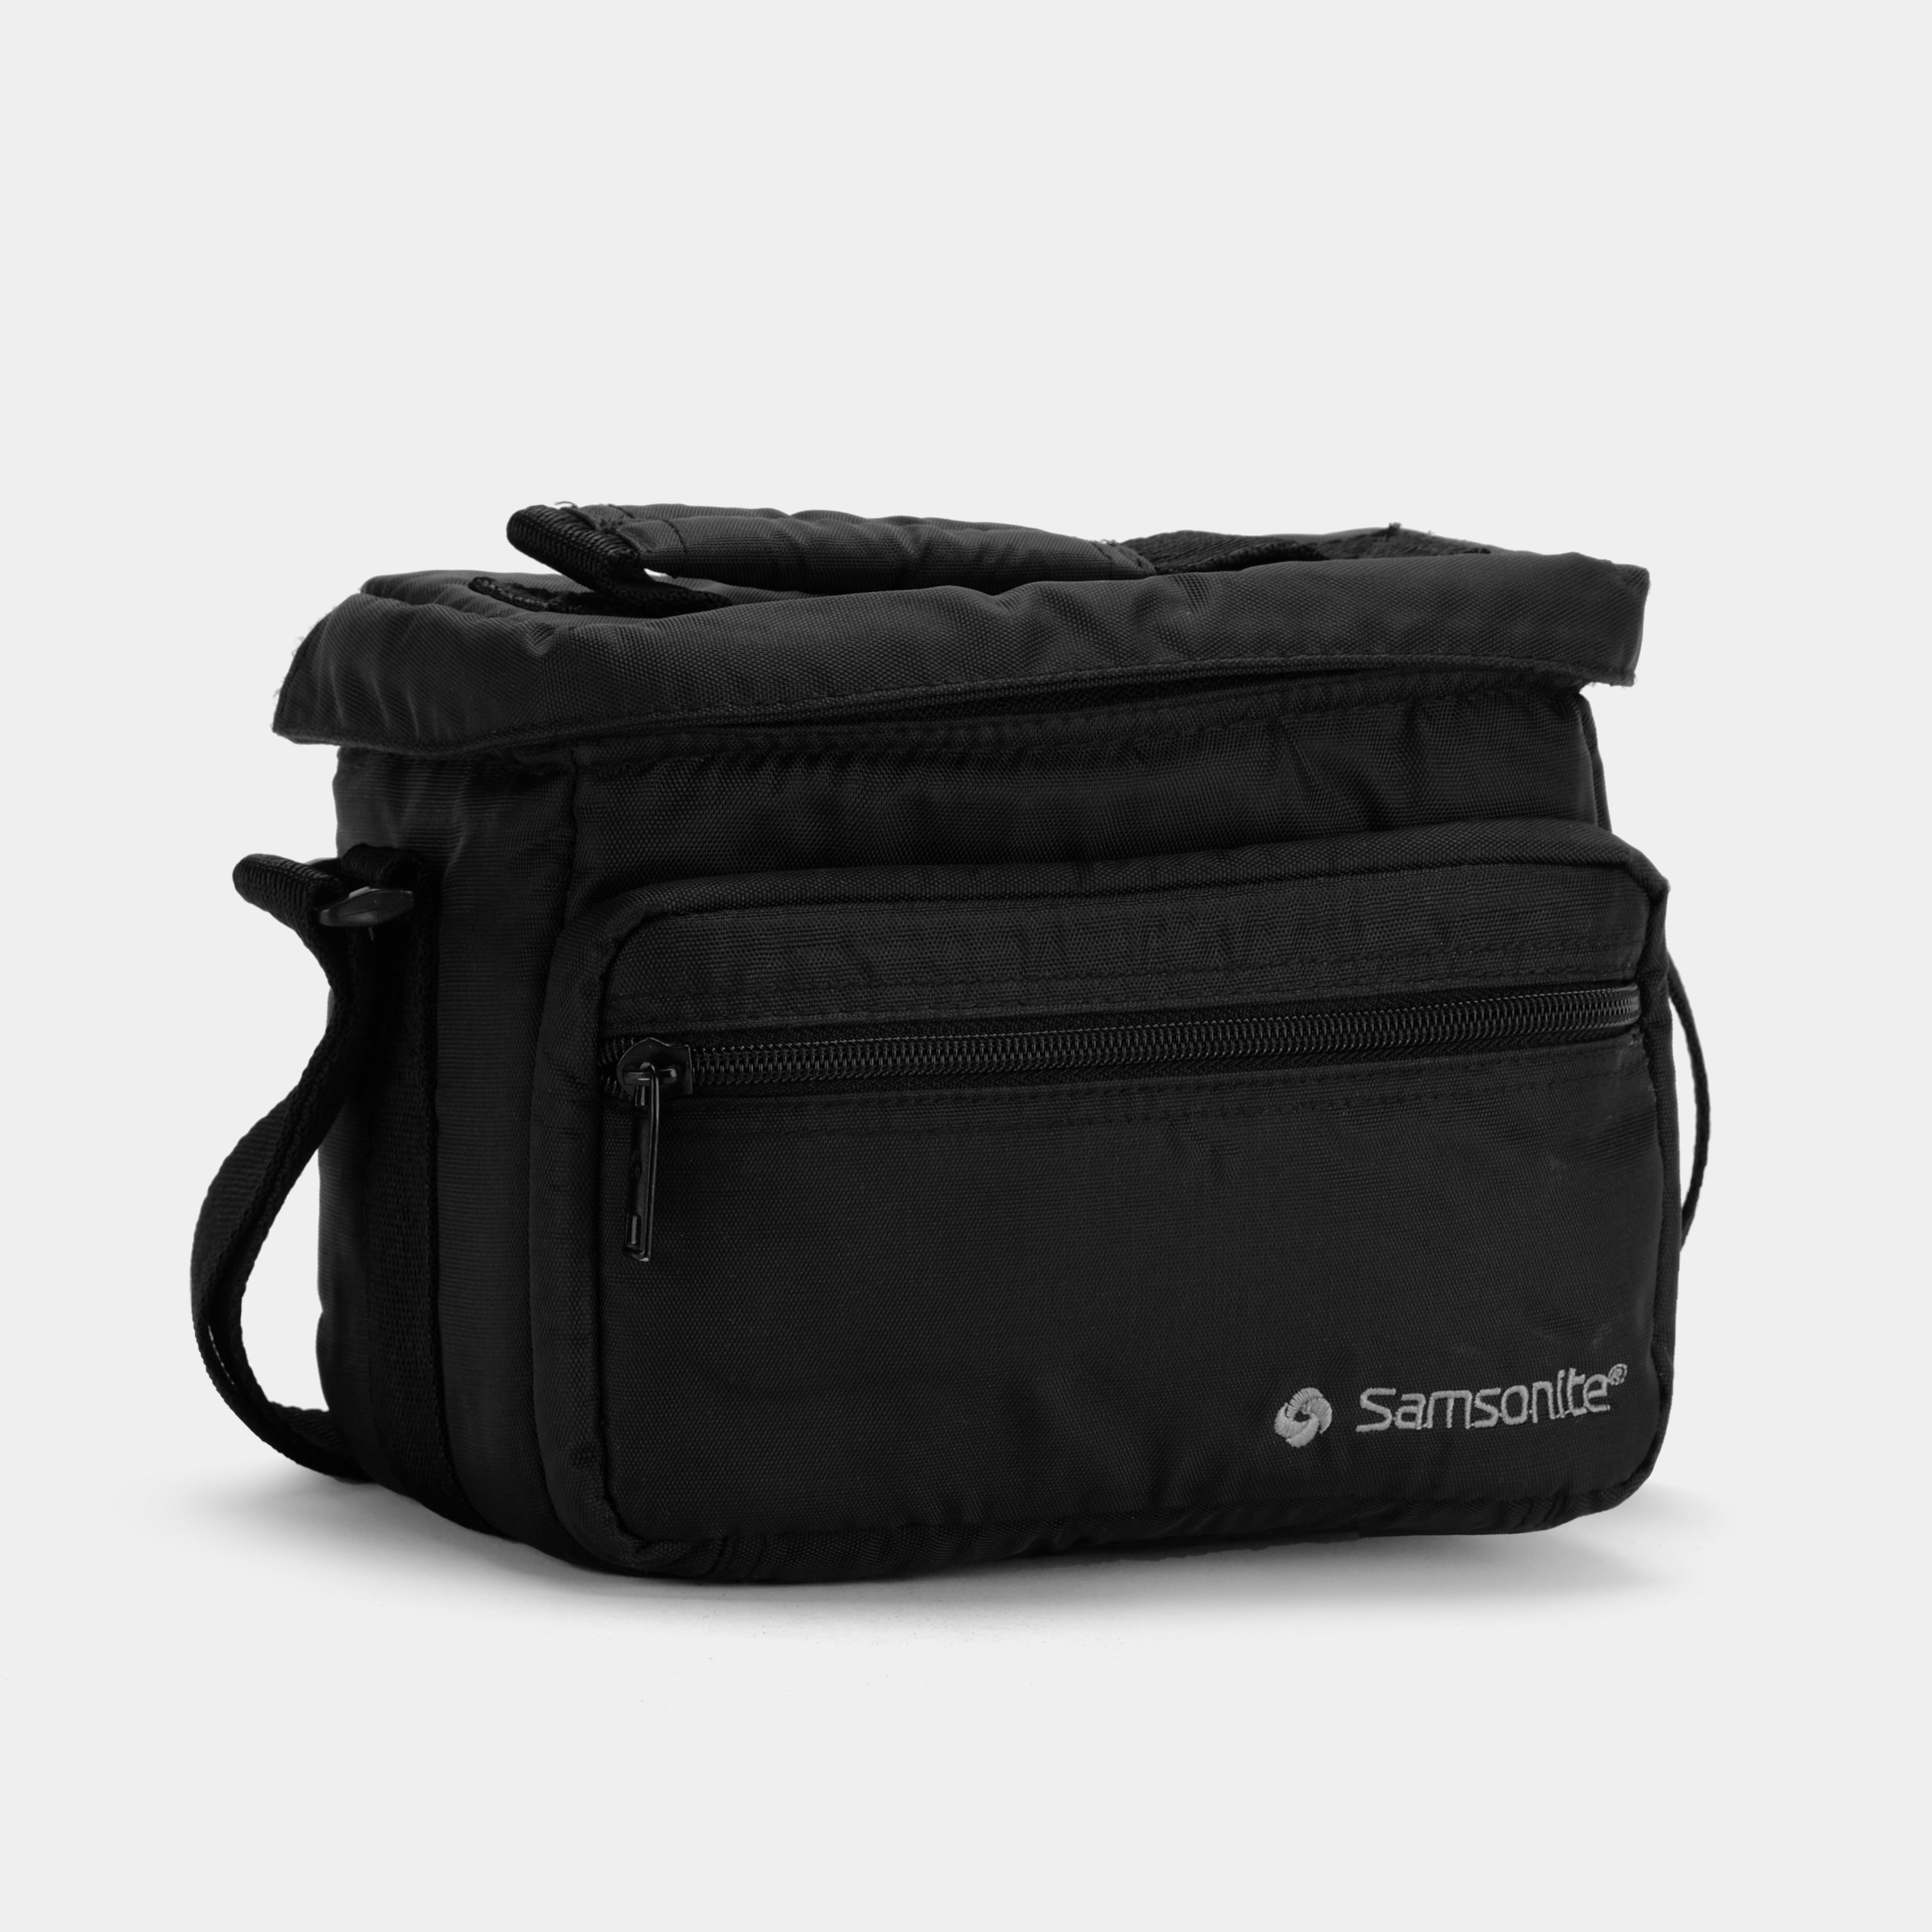 Samsonite Black Camera Bag